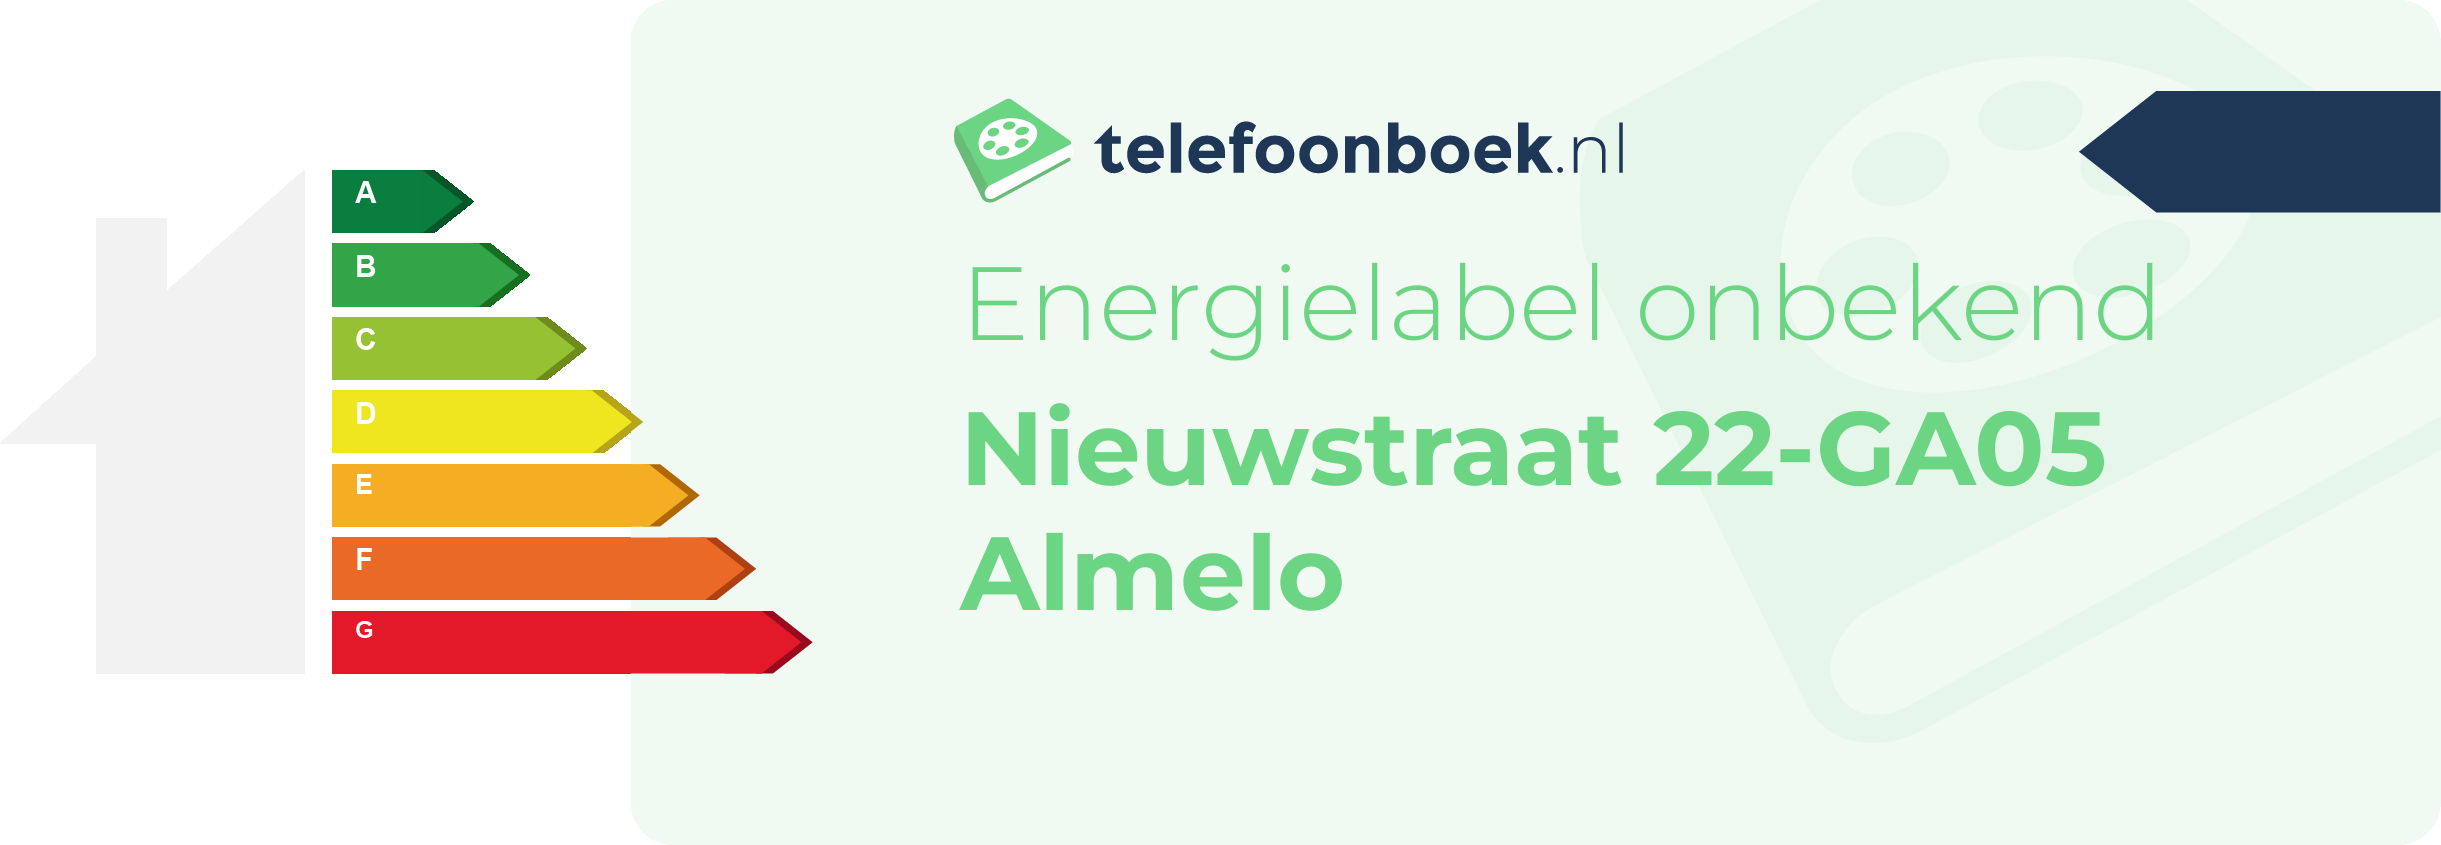 Energielabel Nieuwstraat 22-GA05 Almelo